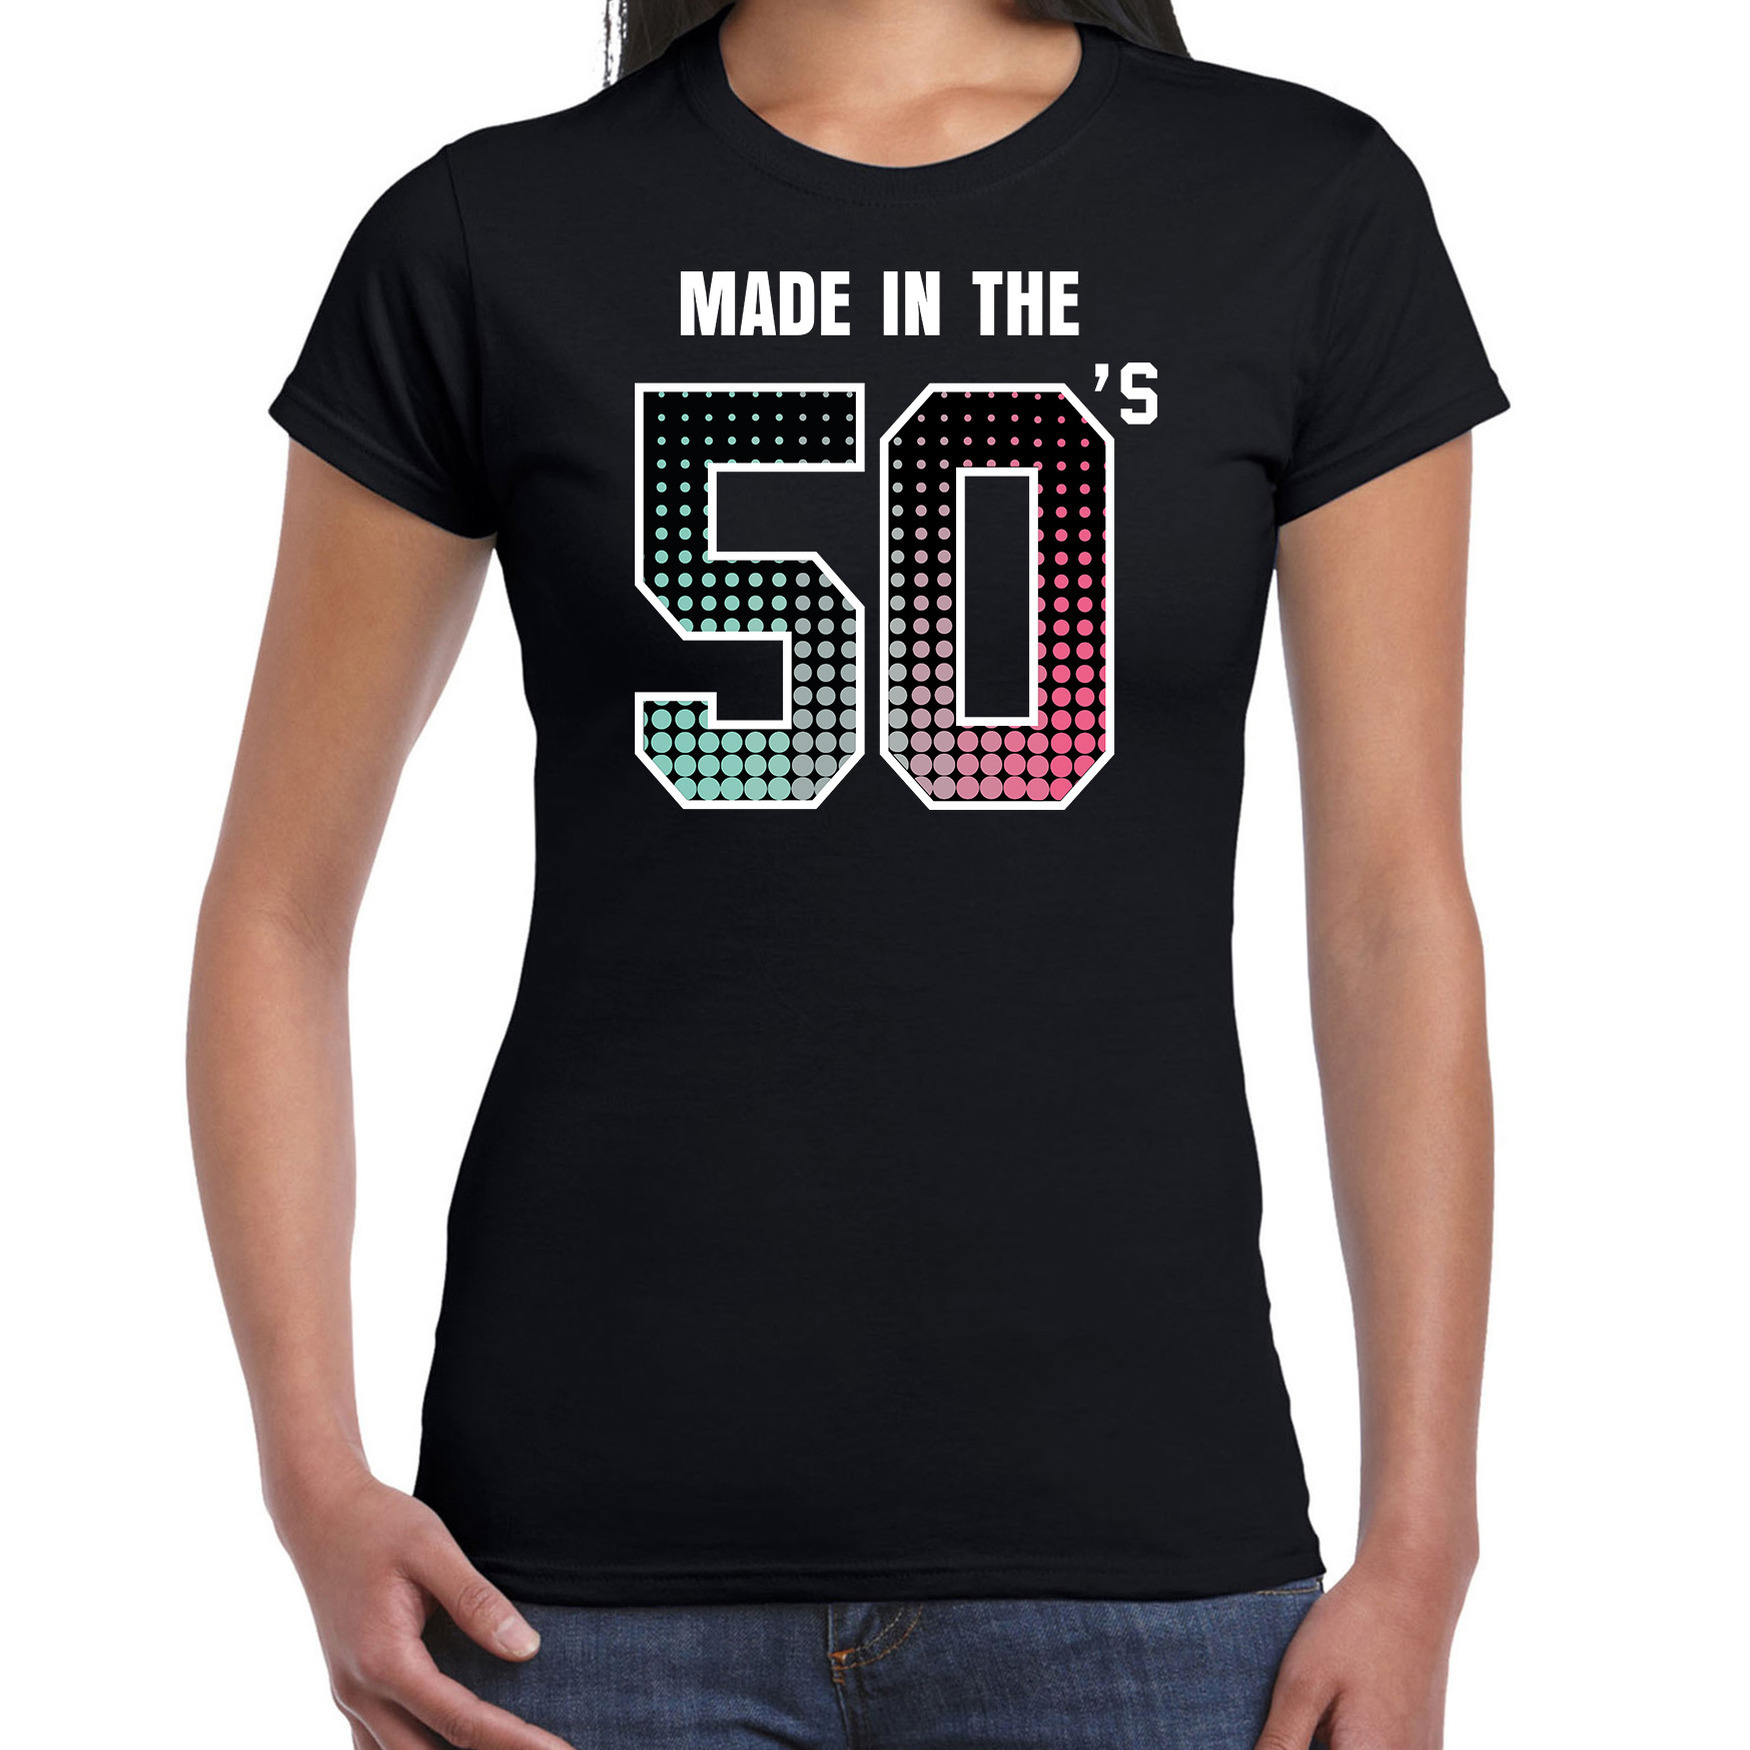 Fiftys t-shirt / shirt made in the 50s / geboren in de jaren 50 zwart voor dames